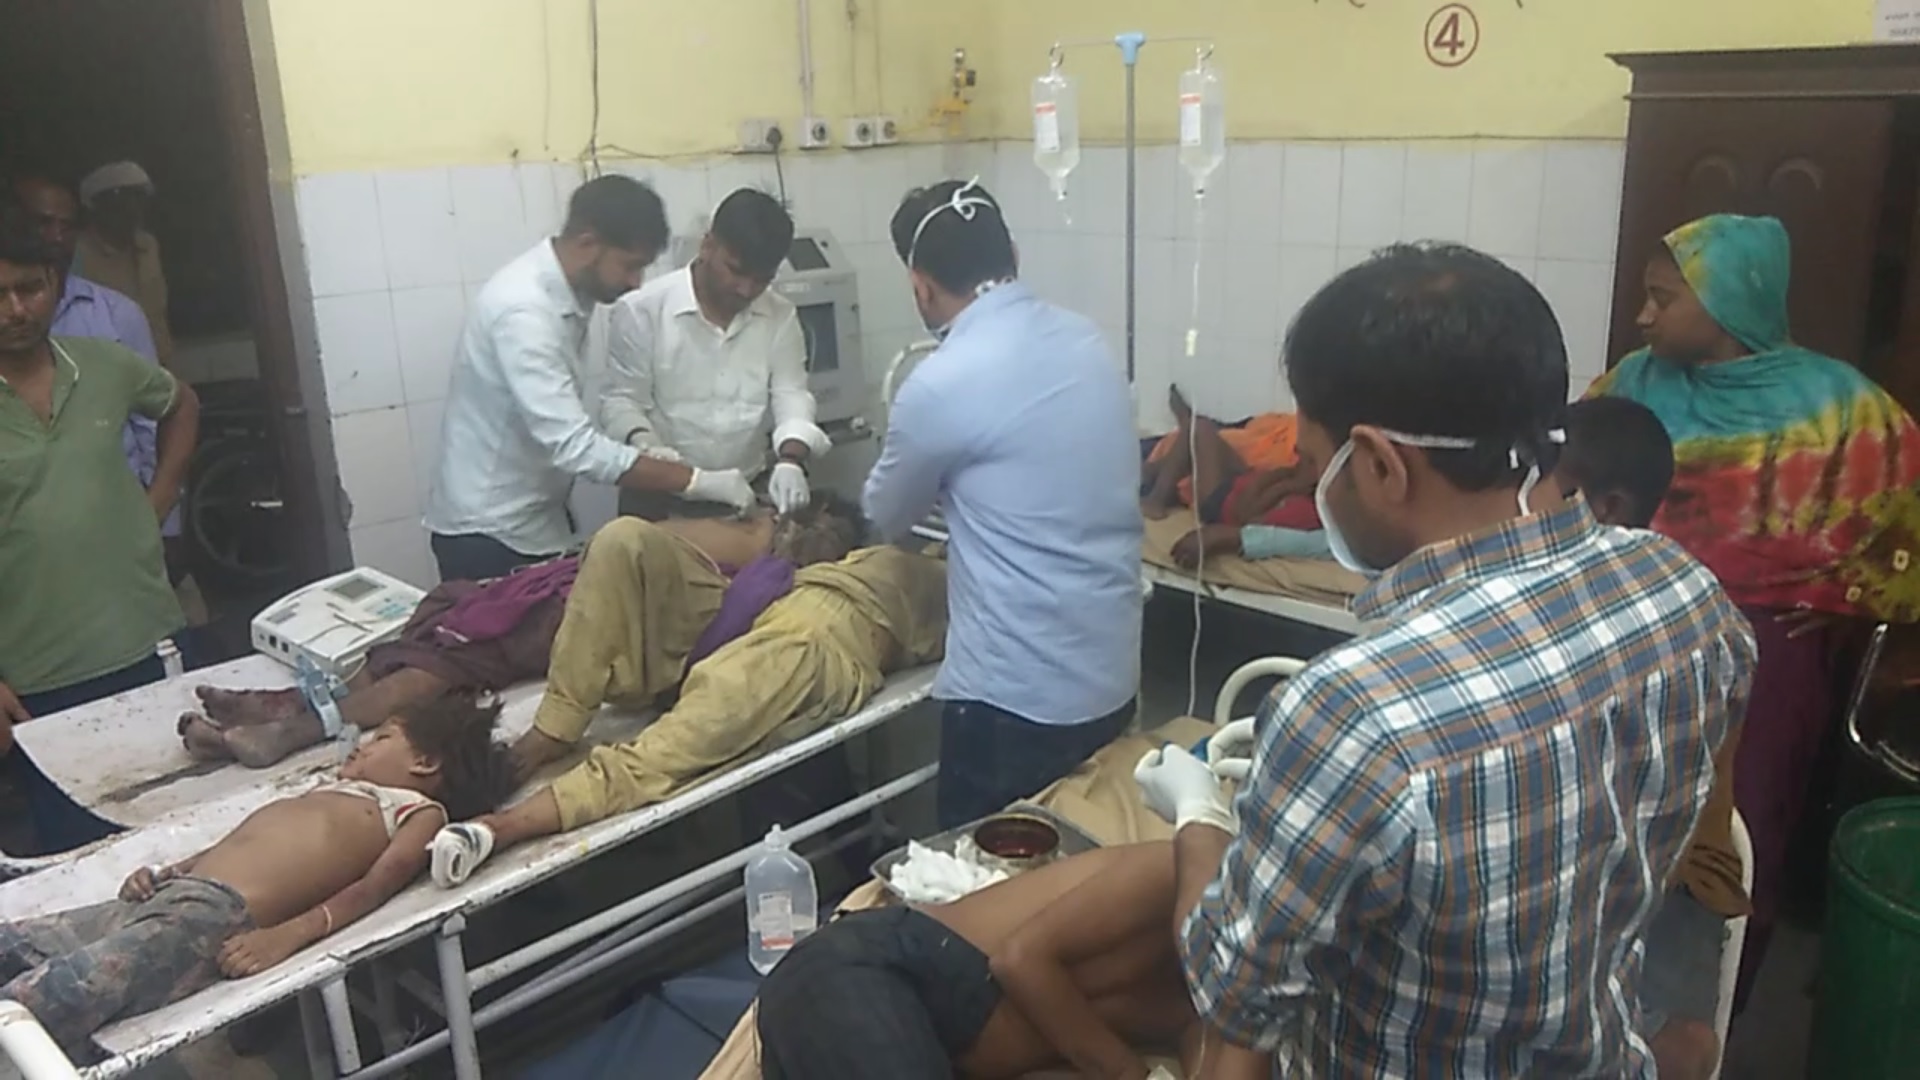 Accident : महवा में भरतपुर रोड पर खानाबदोश परिवार को मारी टक्कर, तीन की मौके पर
मौत